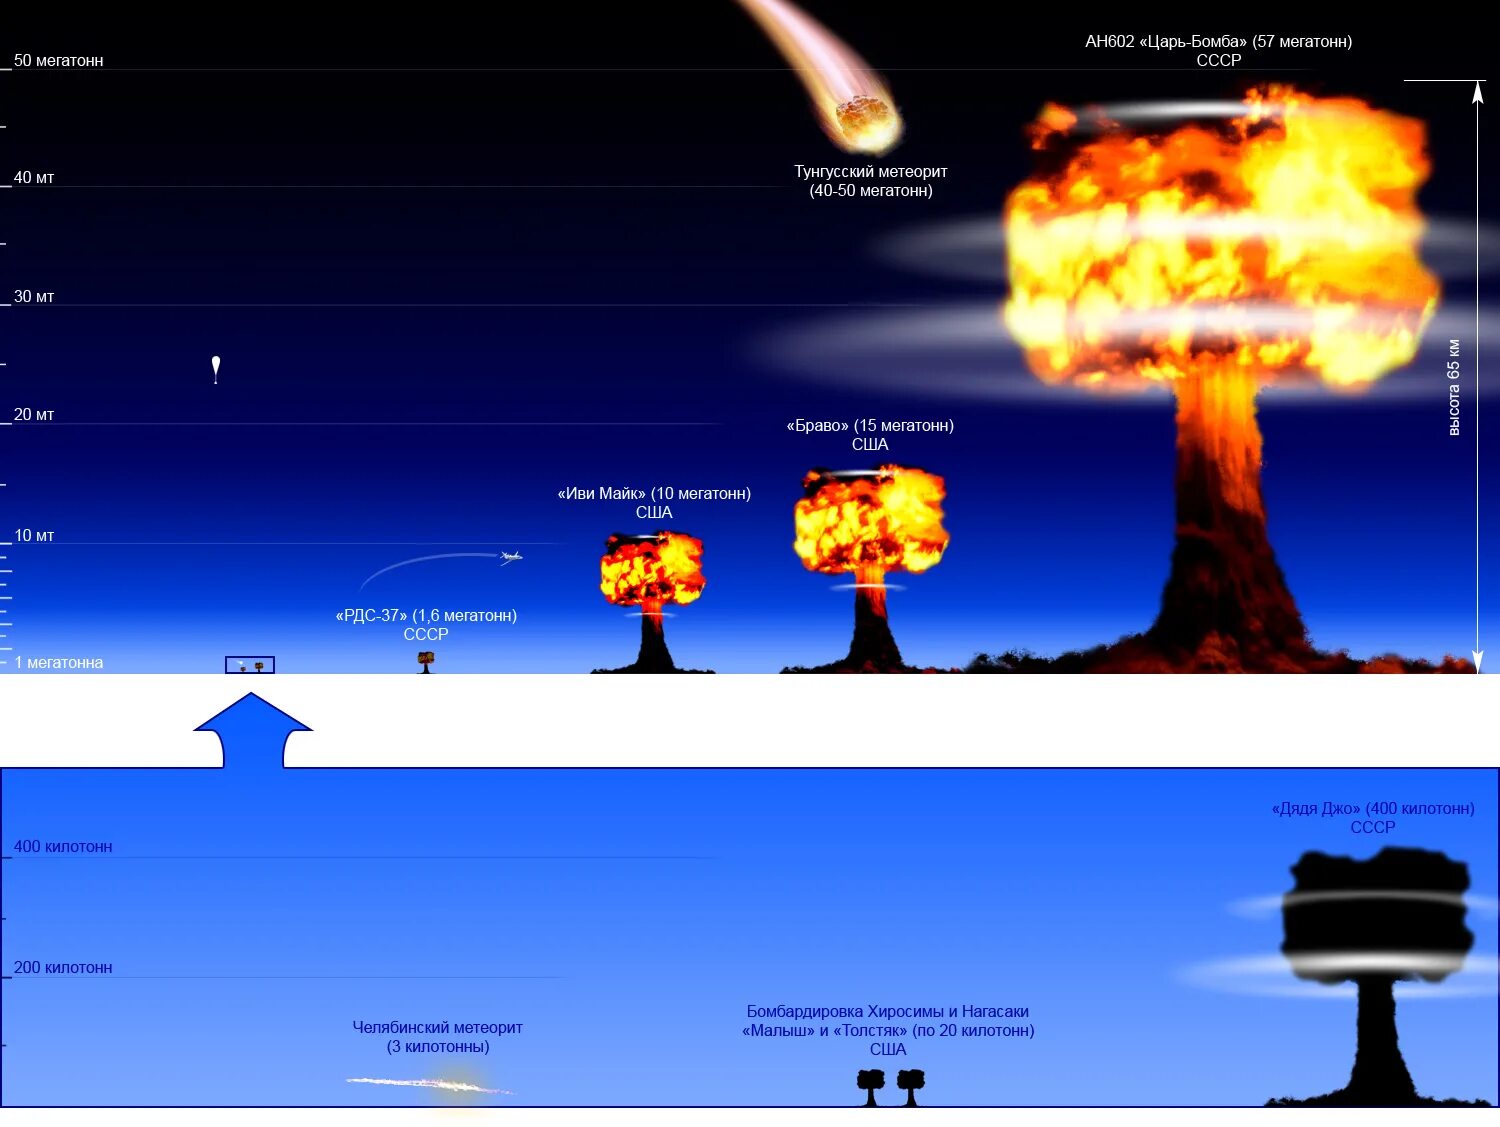 1 ядерное поражение. Ан602 царь-бомба. Ан602 термоядерная бомба — «царь-бомба» (58,6 мегатонн). РДС 202 царь бомба. Водородная бомба царь бомба радиус поражения.